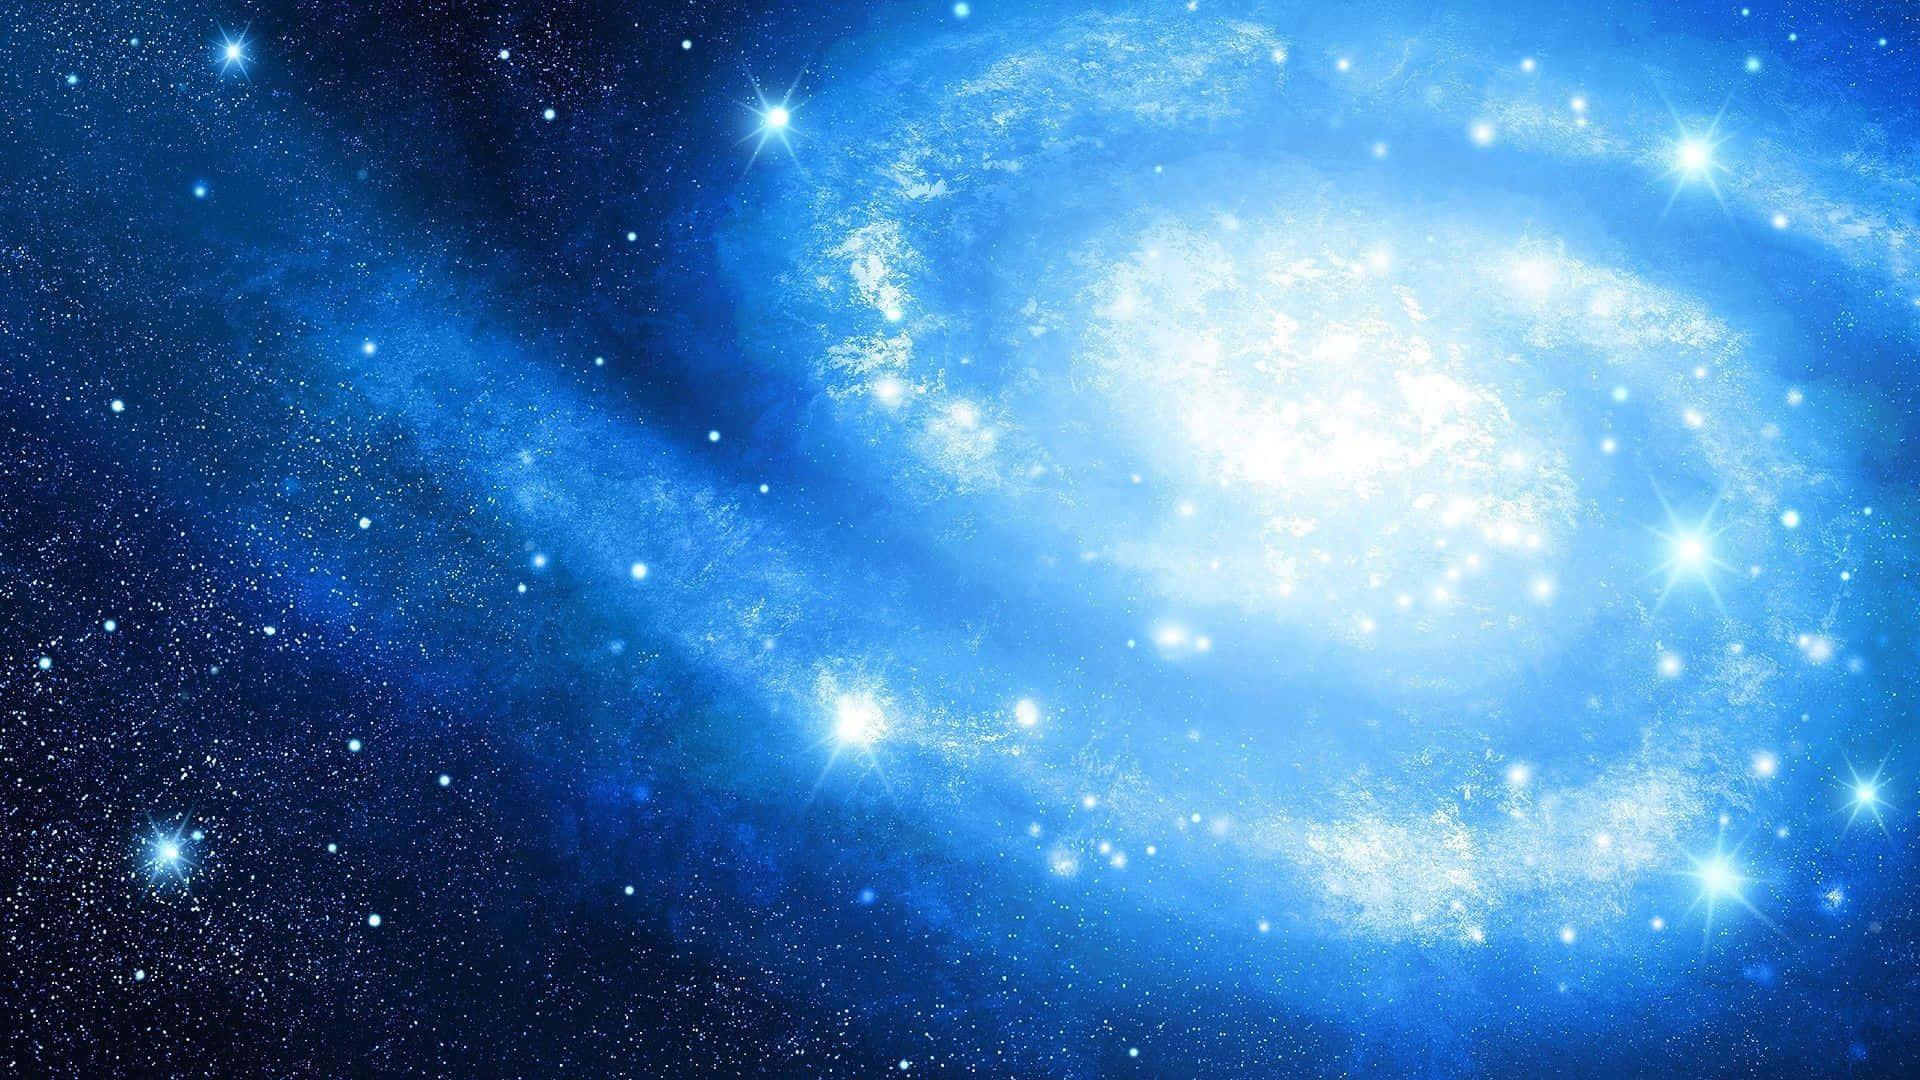 Unavista Impresionante - Una Galaxia Azul En El Espacio.